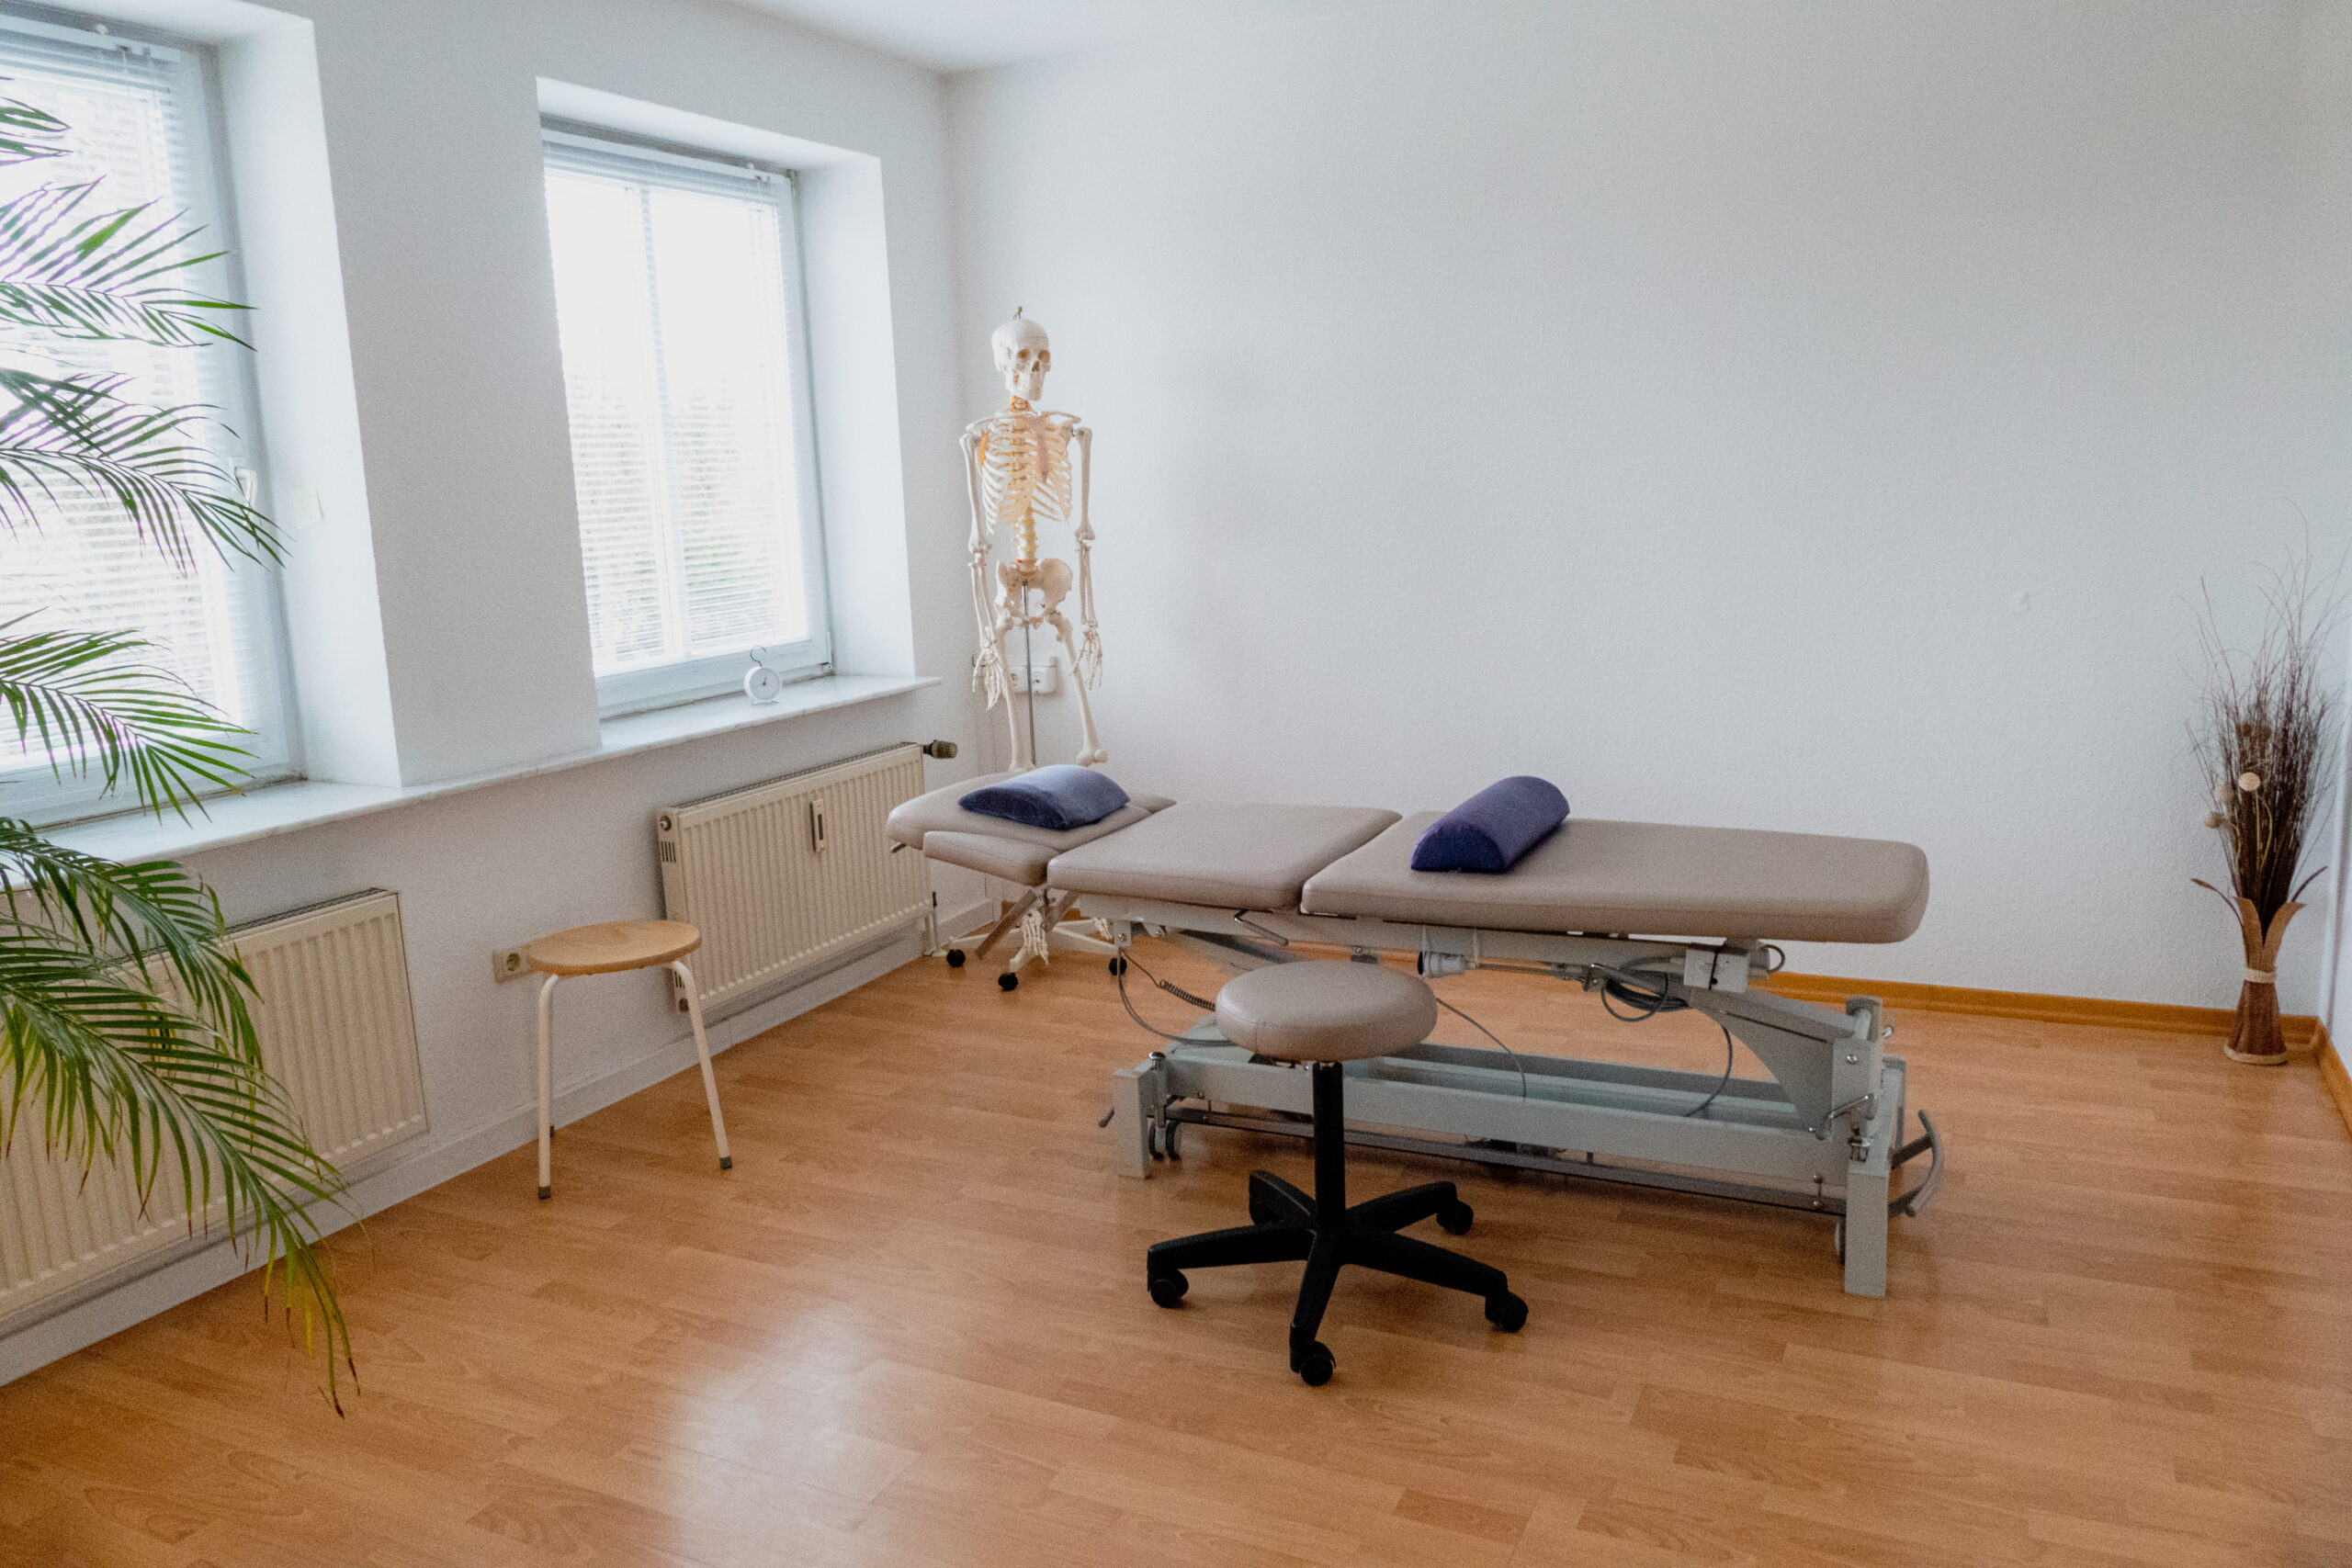 In diesem einladenden Therapieraum können Patienten in angenehmer Atmosphäre professionelle physiotherapeutische Behandlungen erhalten.